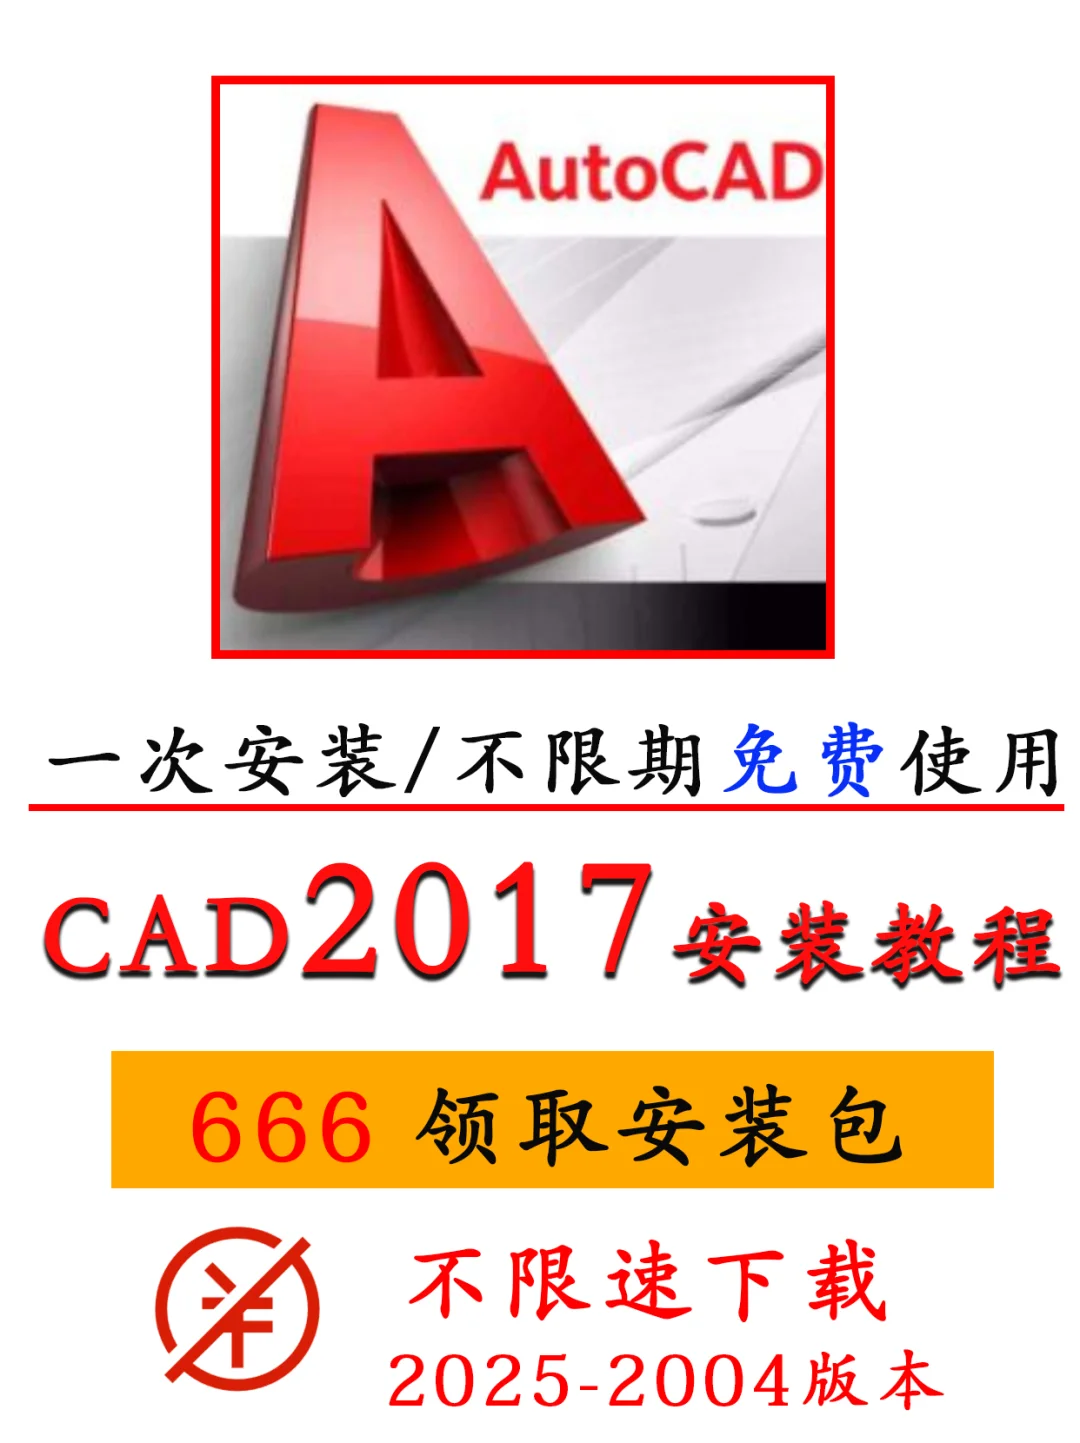 CAD软件2017安装激活教程步骤详细